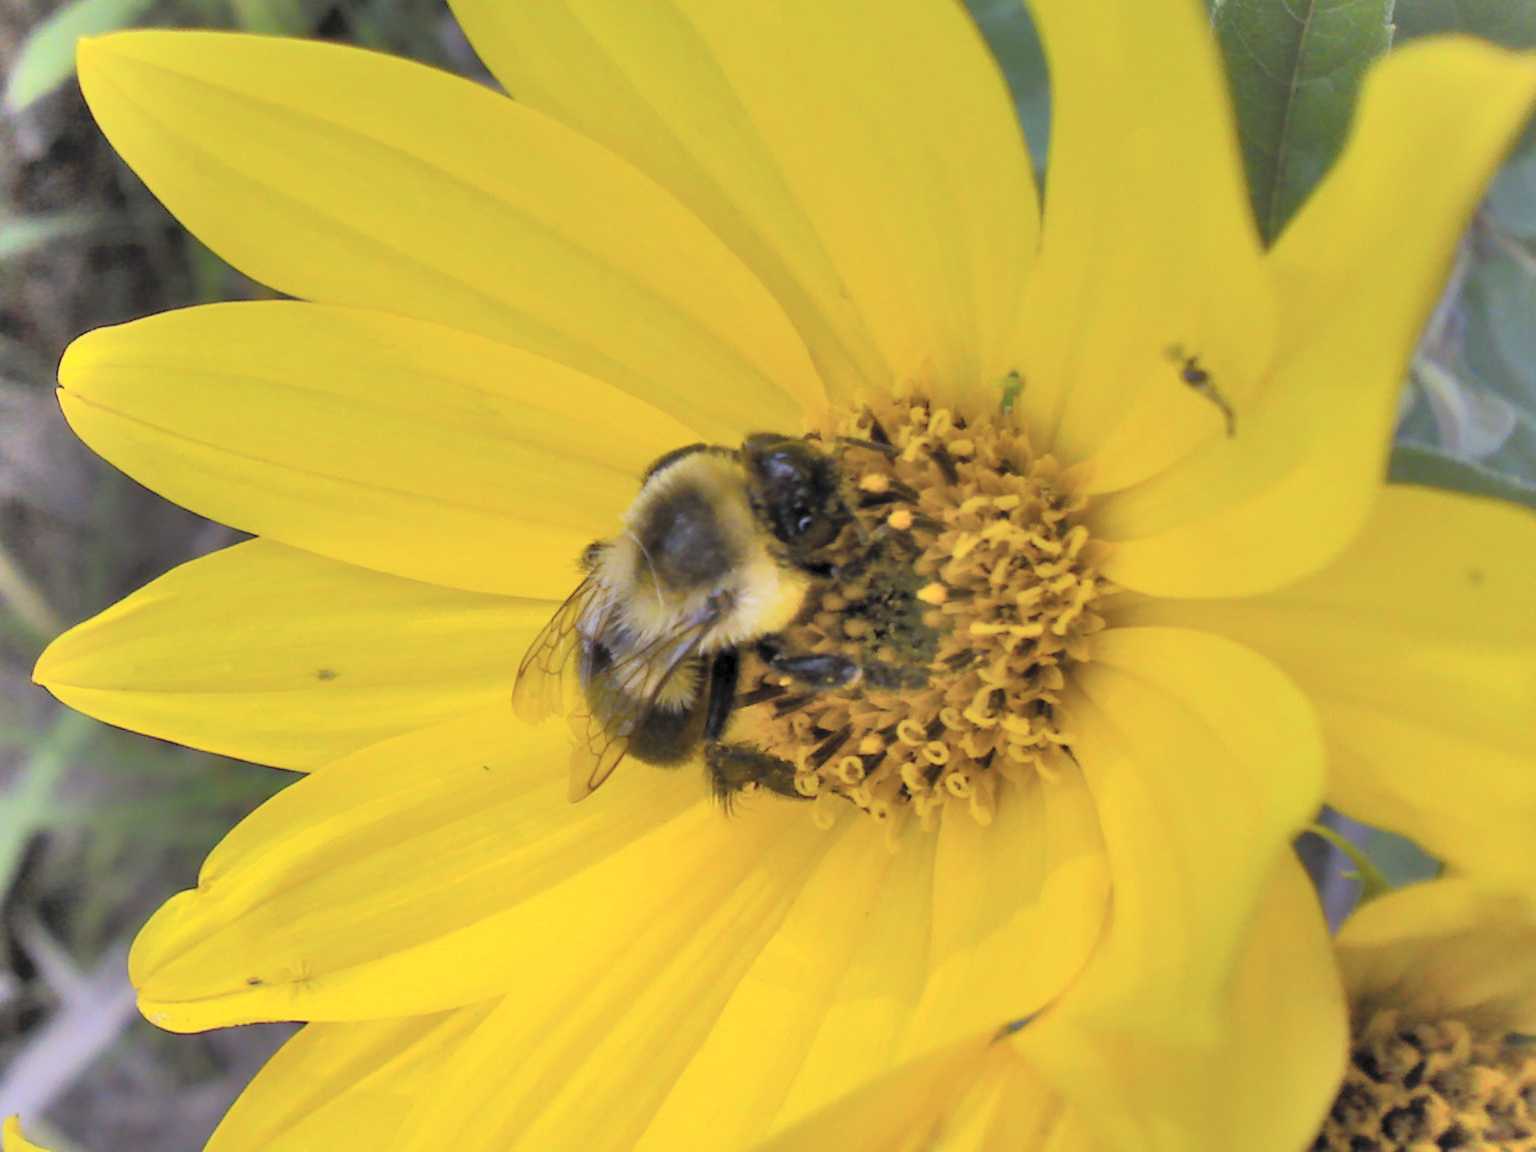 Bumble bee on tickseed sunflower, Blaine, MN